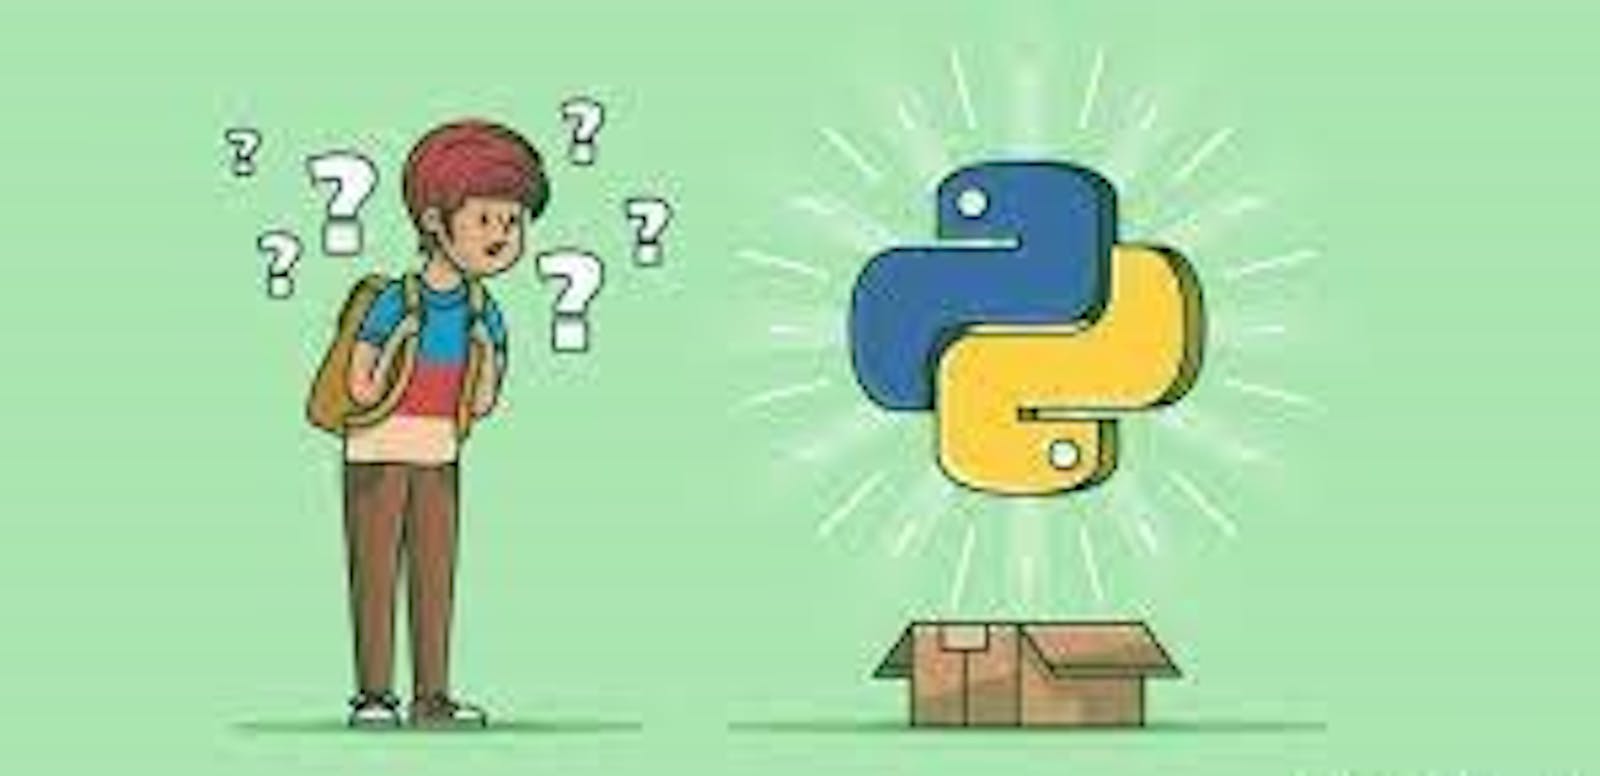 #day13-Python basics🐍